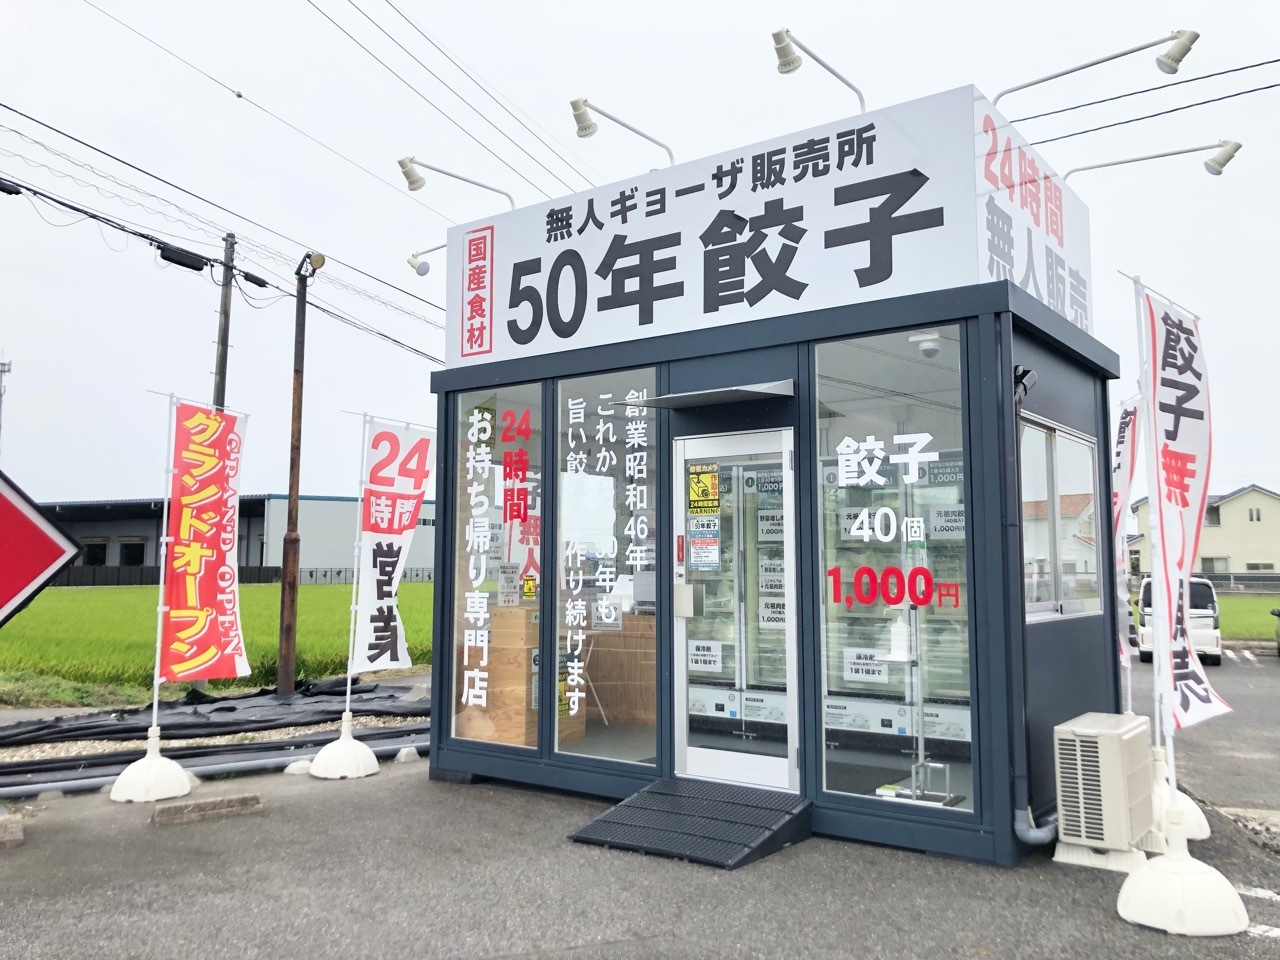 無人ギョーザ販売所「50年餃子」豊田福受店